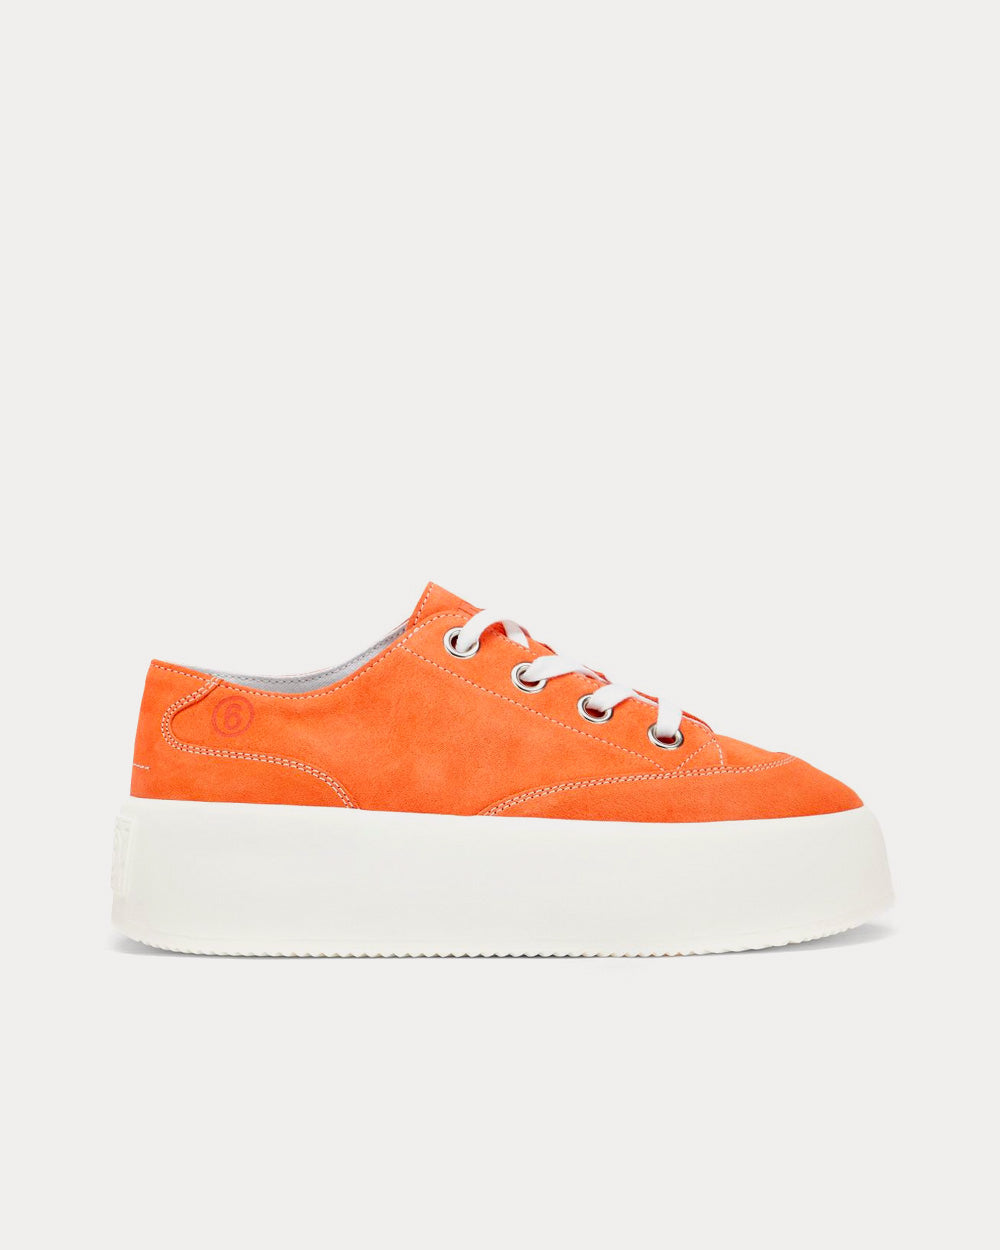 Maison Margiela MM6 Flatform Orange Low Sneakers - Sneak in Peace